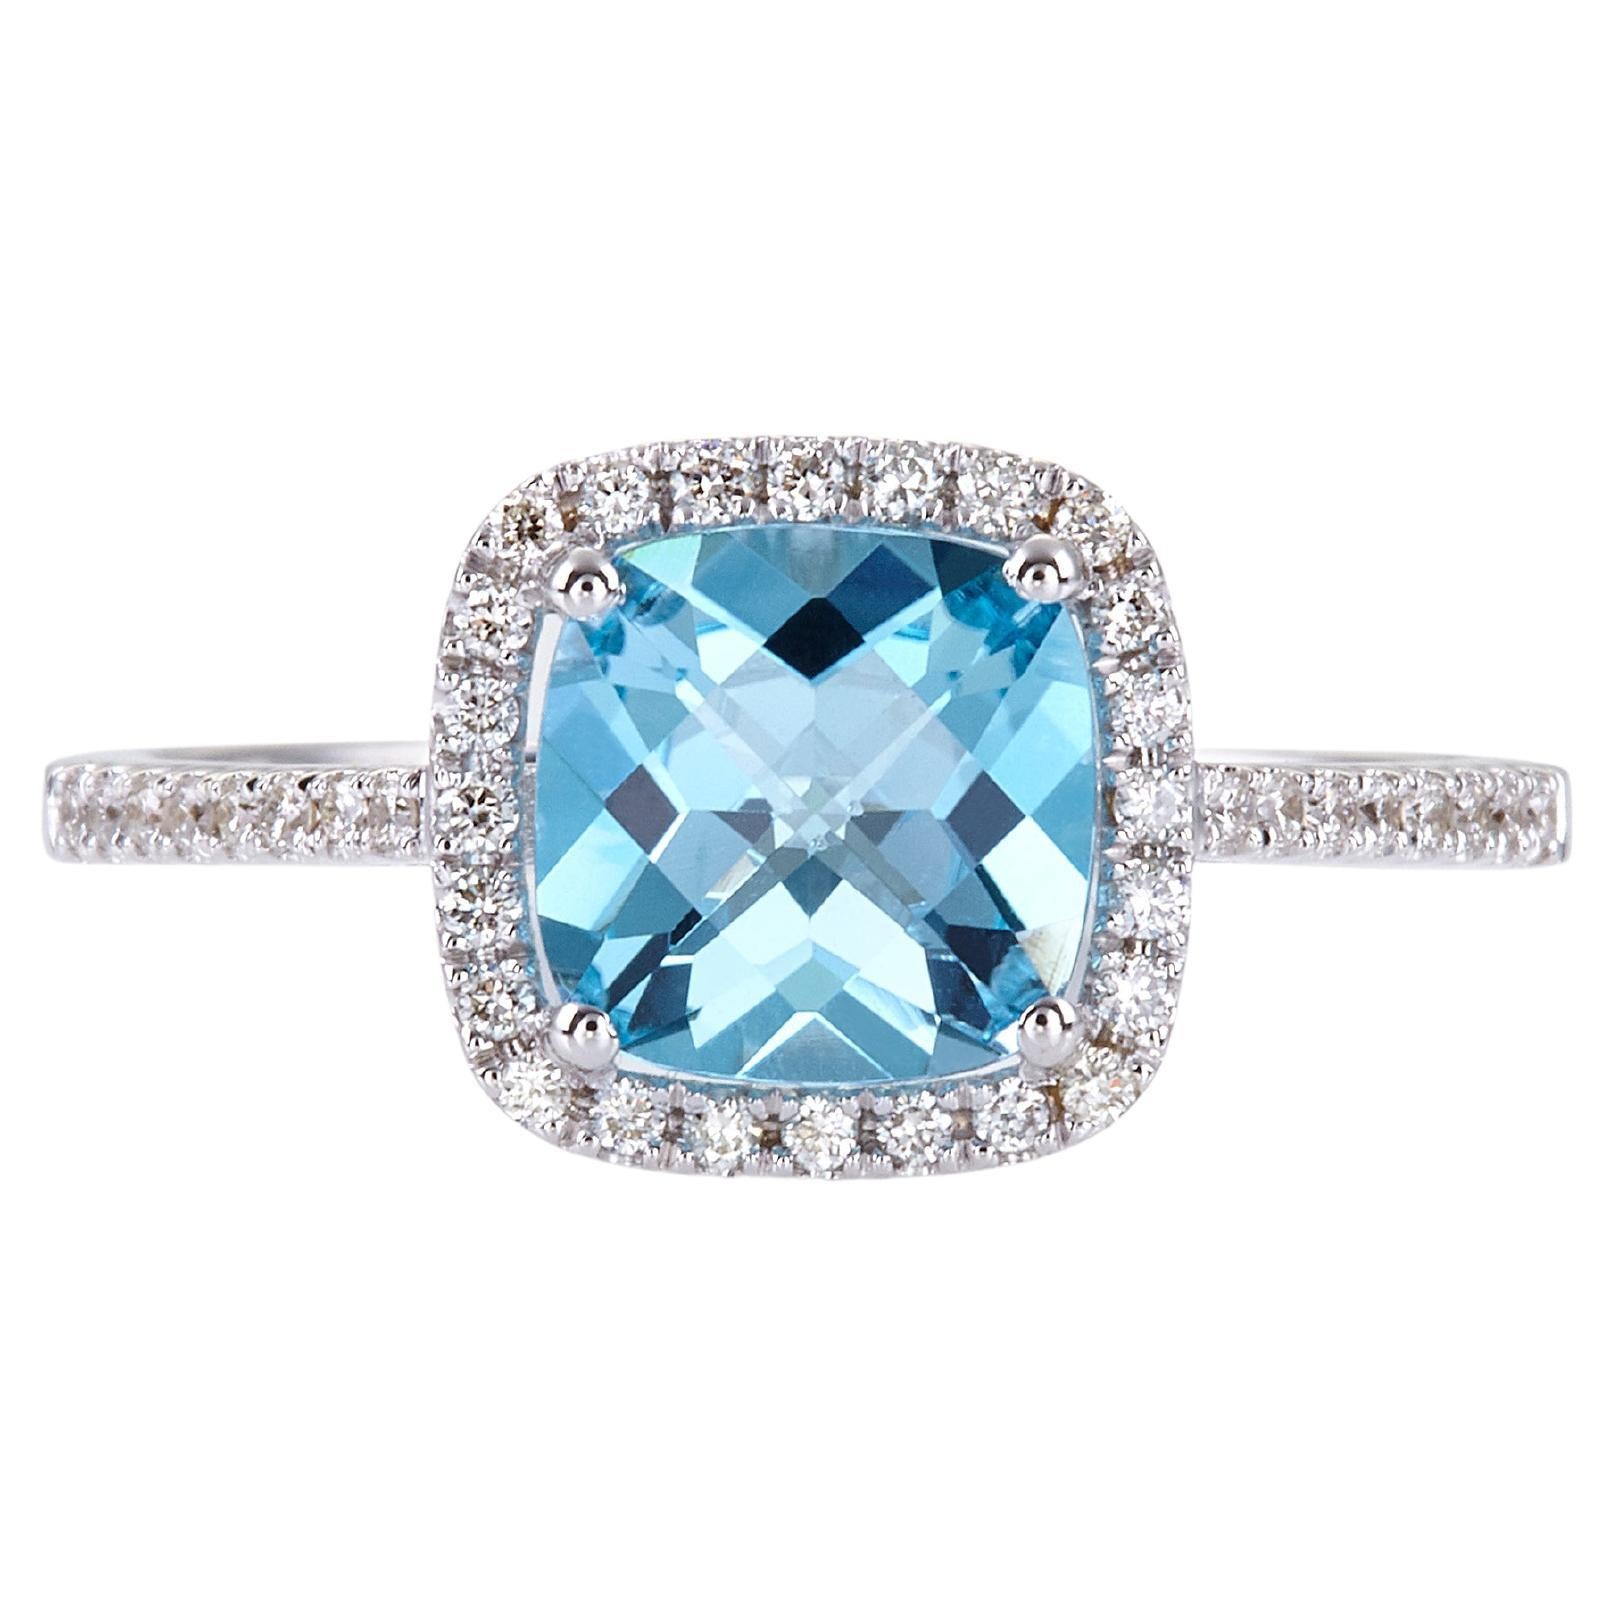 En vente :  Bague en or blanc 18 carats, topaze bleue taille coussin 1,80 carat et halo de diamants micro-pavés